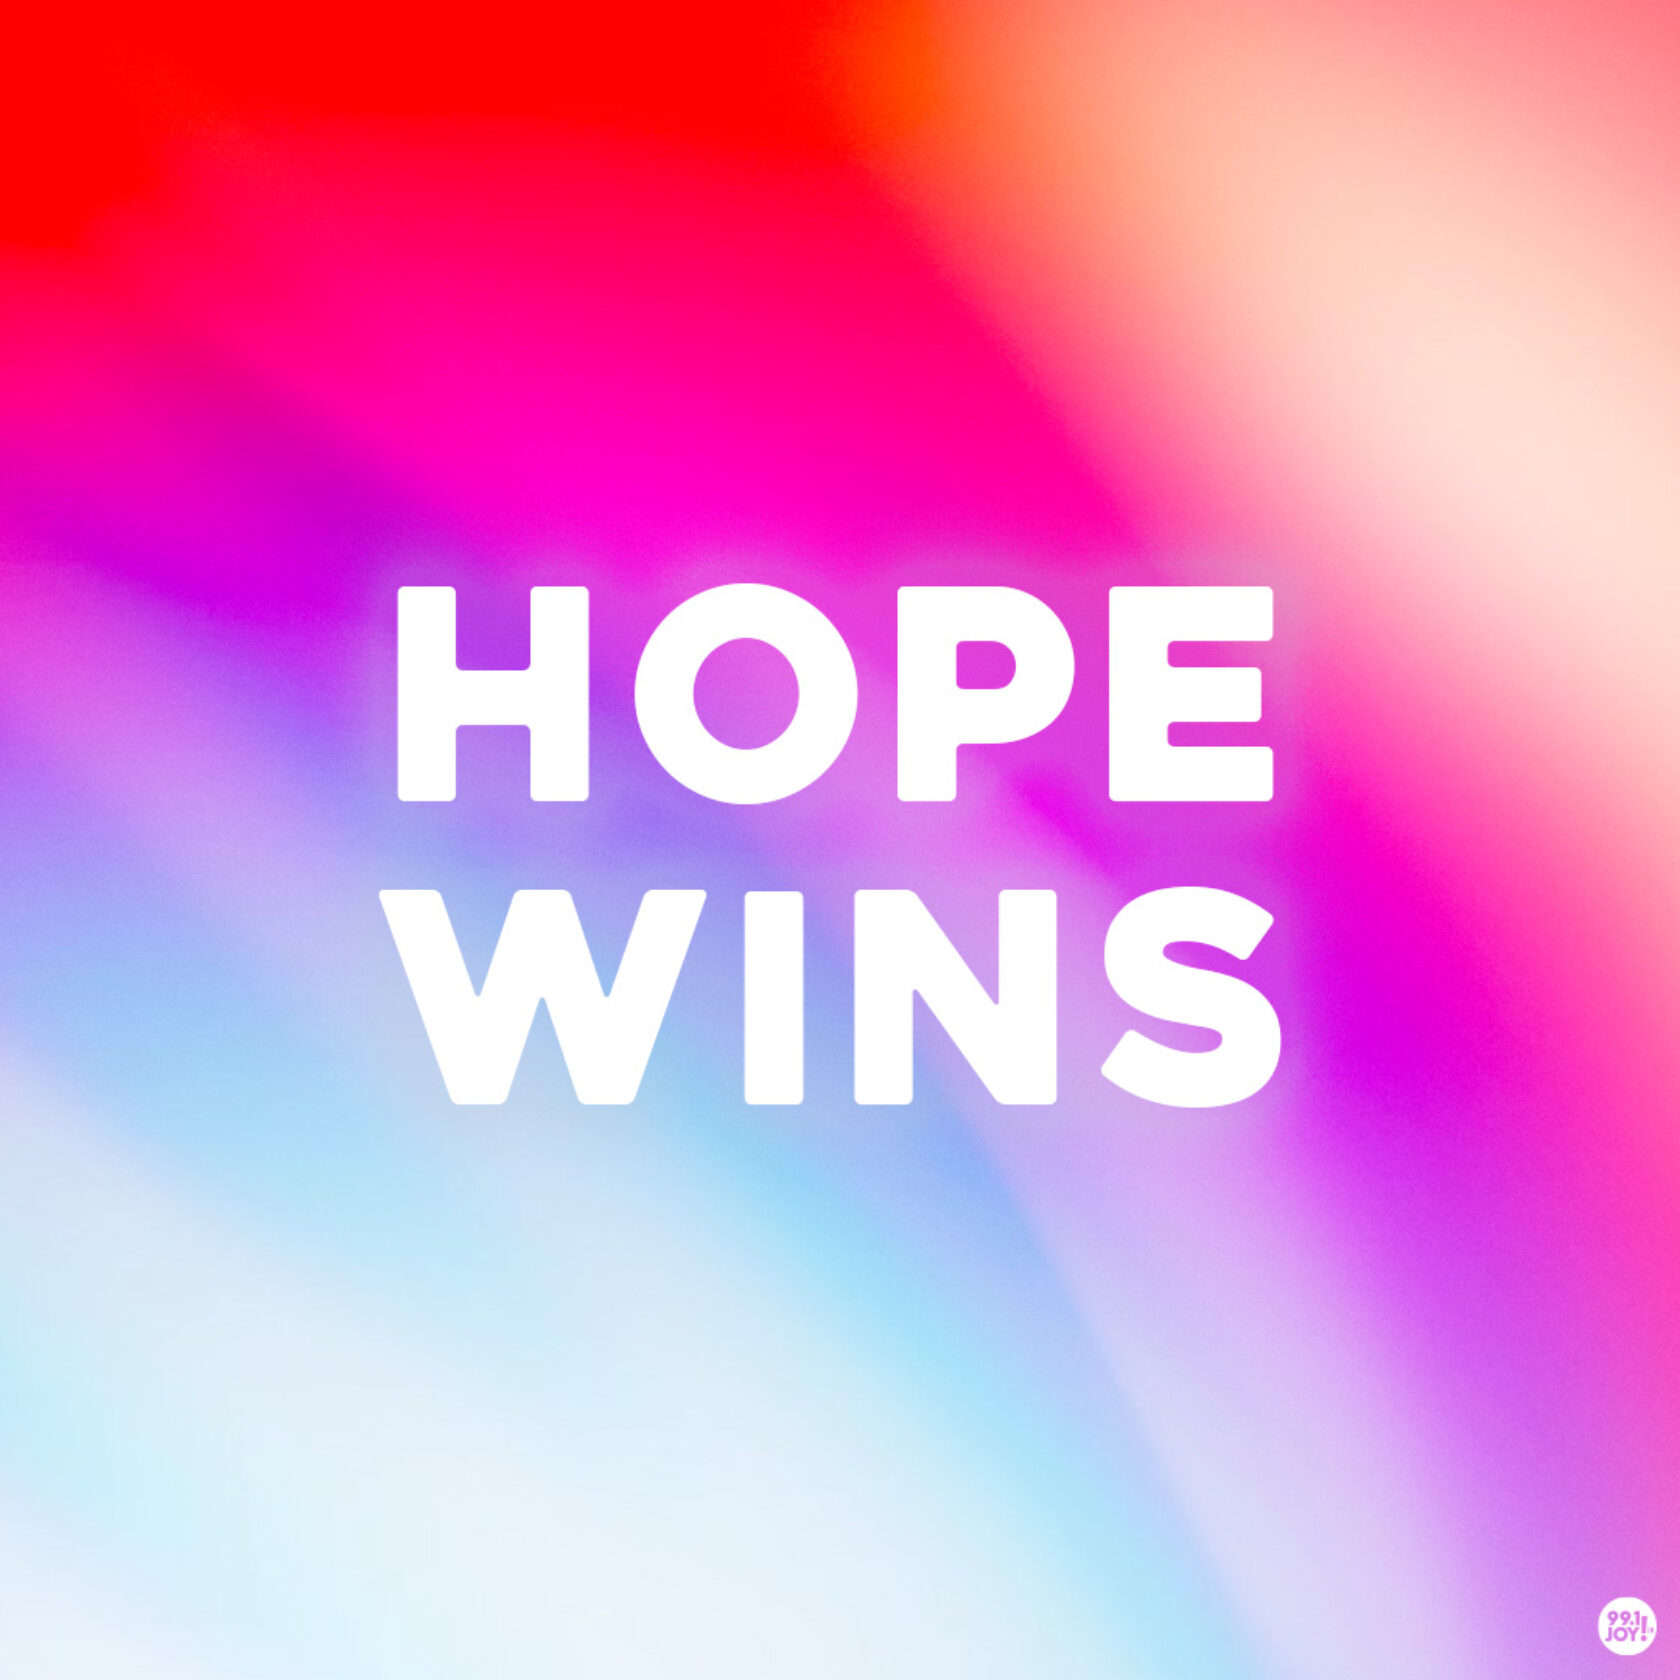 Hope wins.